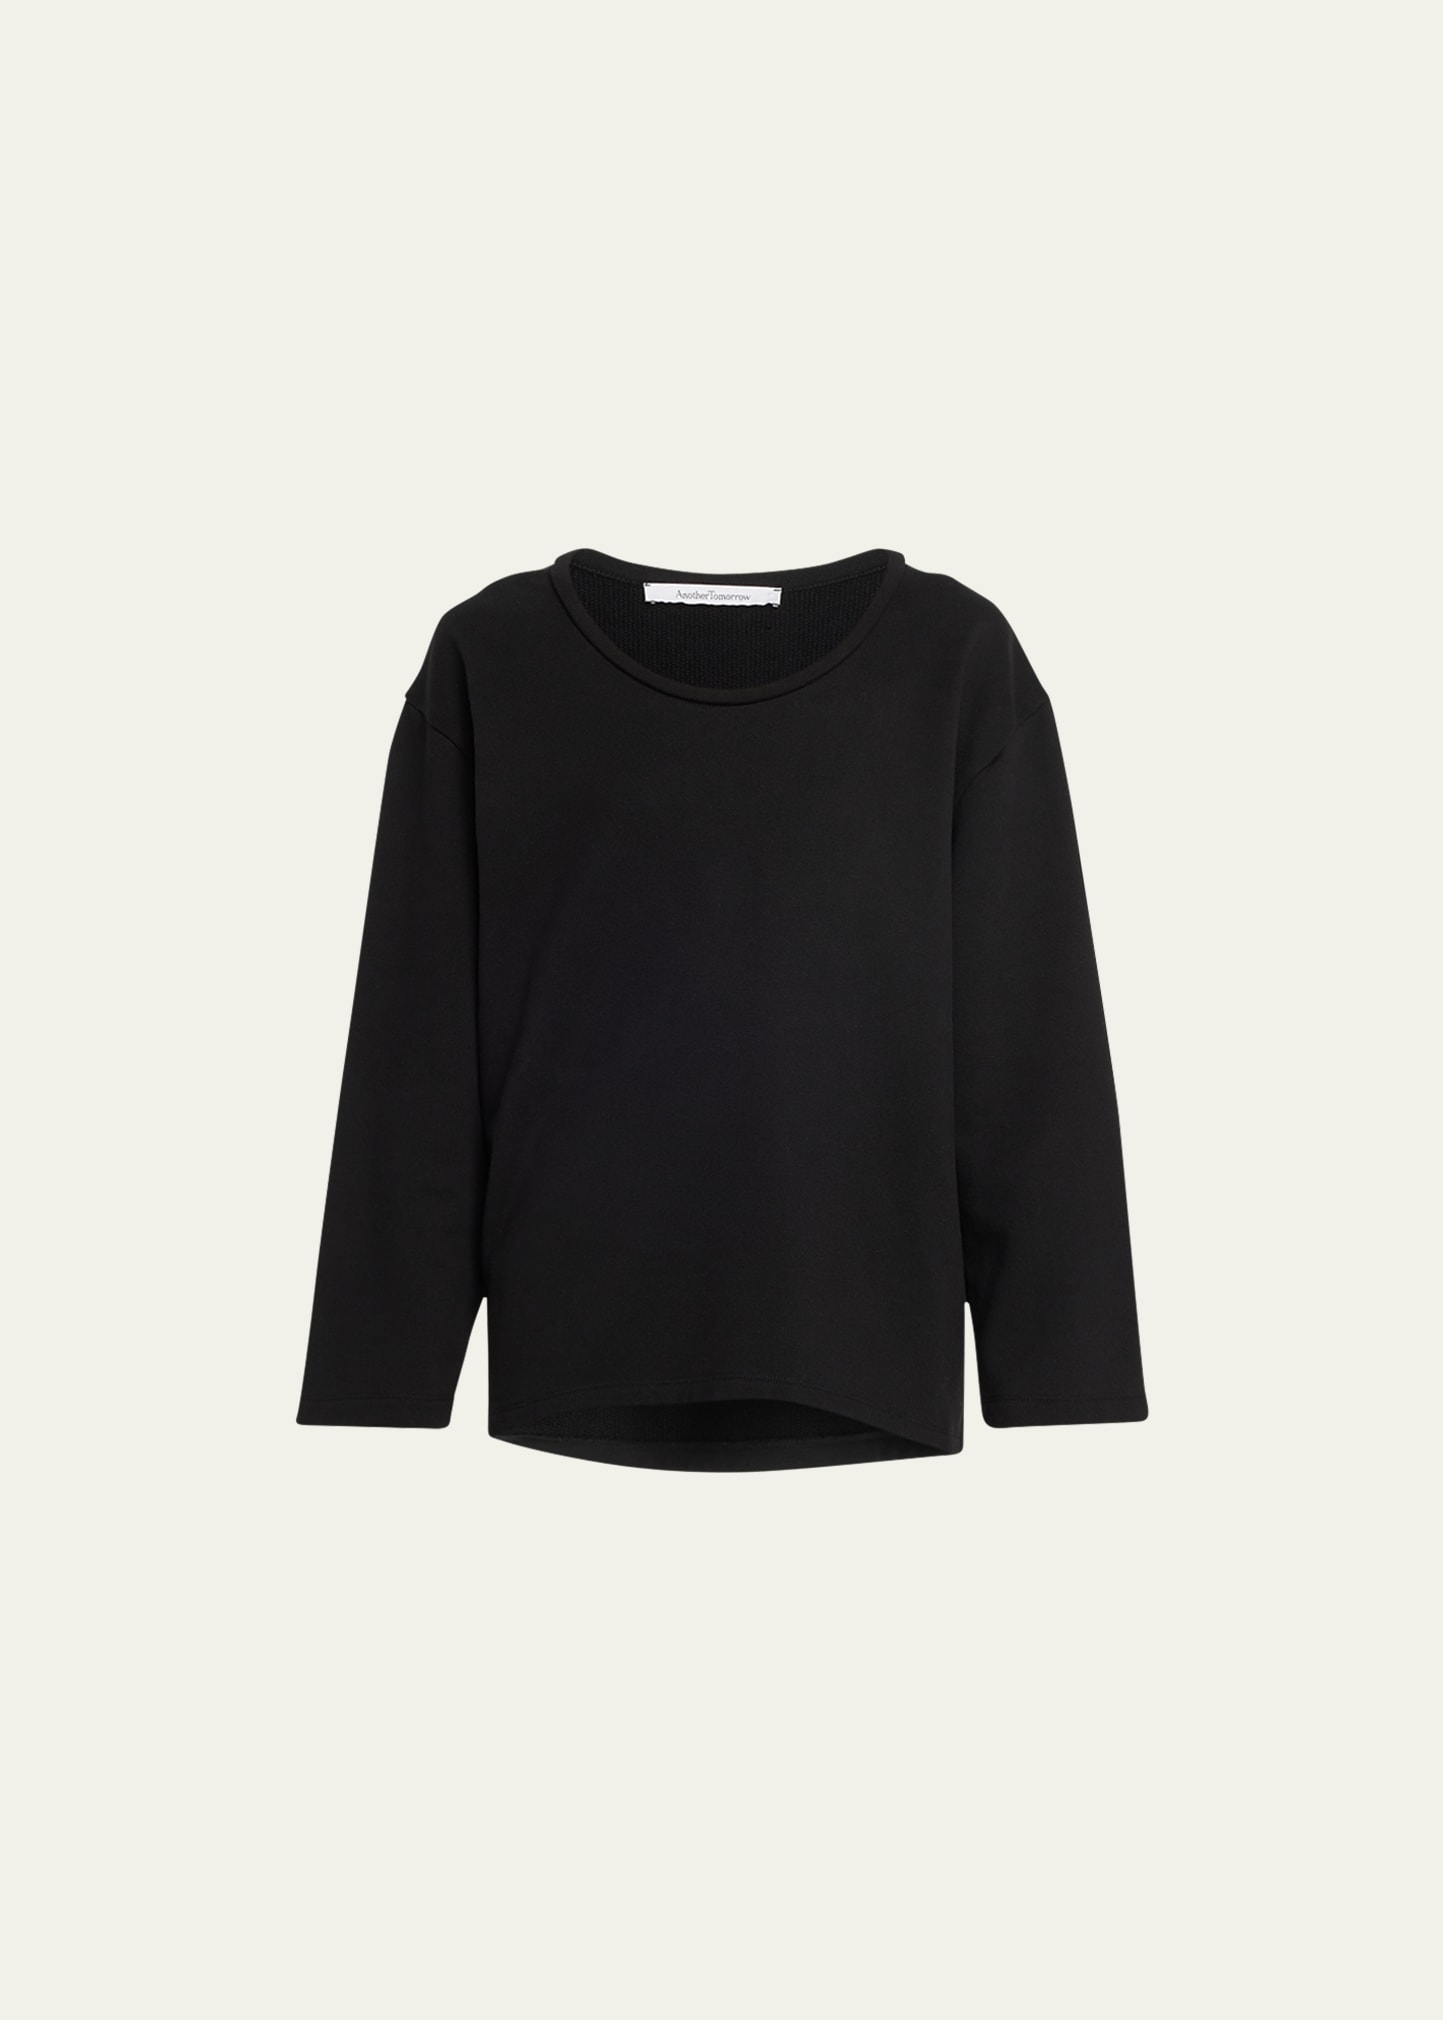 Another Tomorrow Cocoon Fleece Sweatshirt In Black